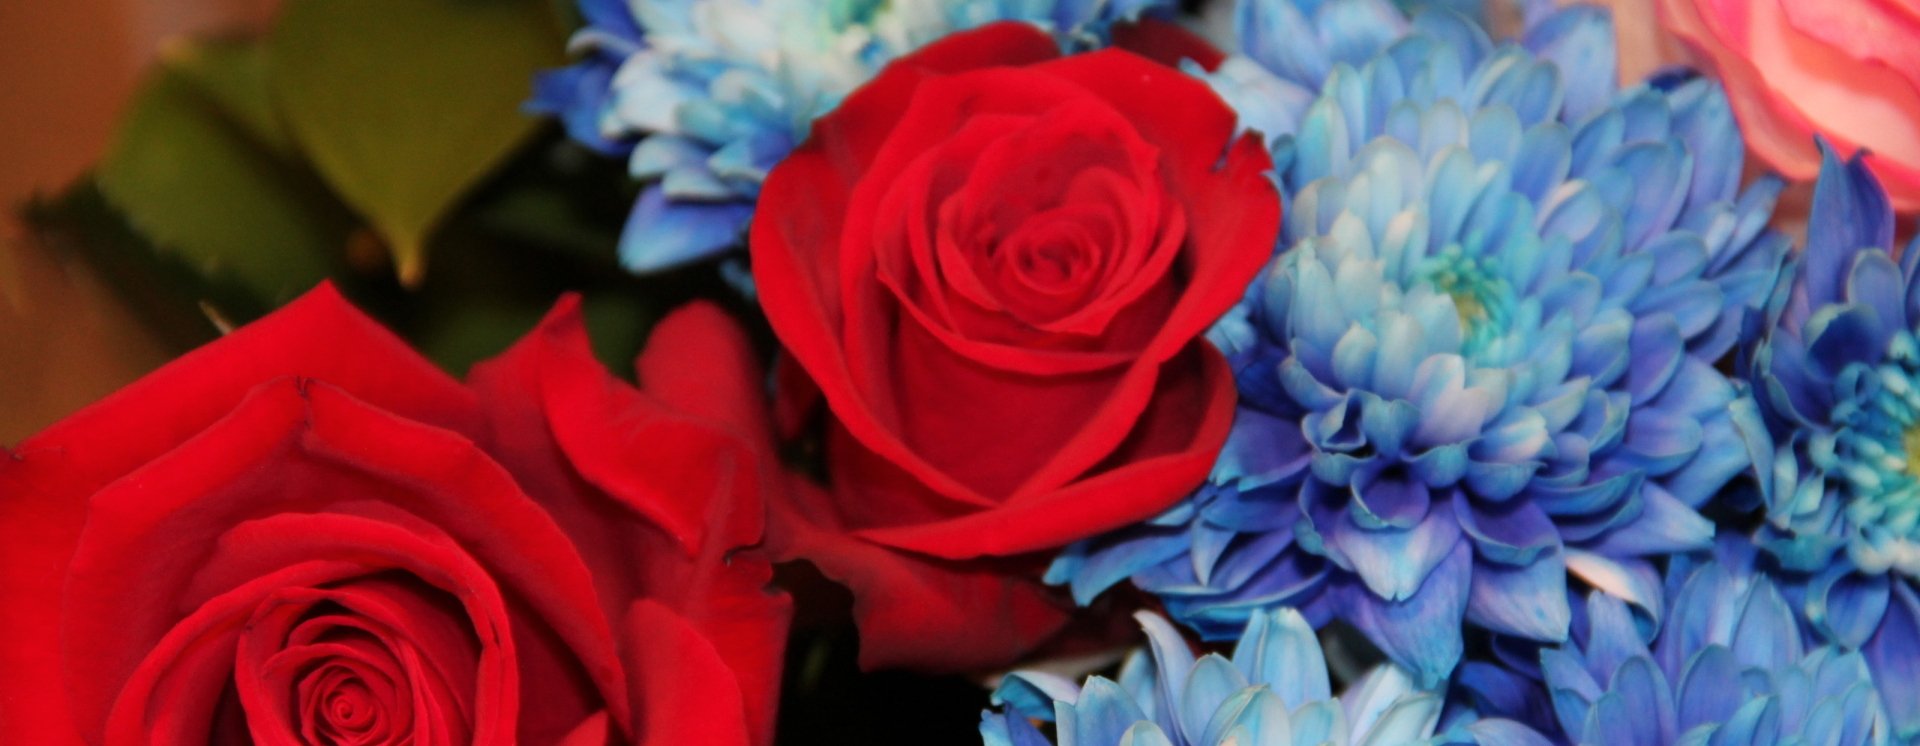 Roses et fleurs bleues copy